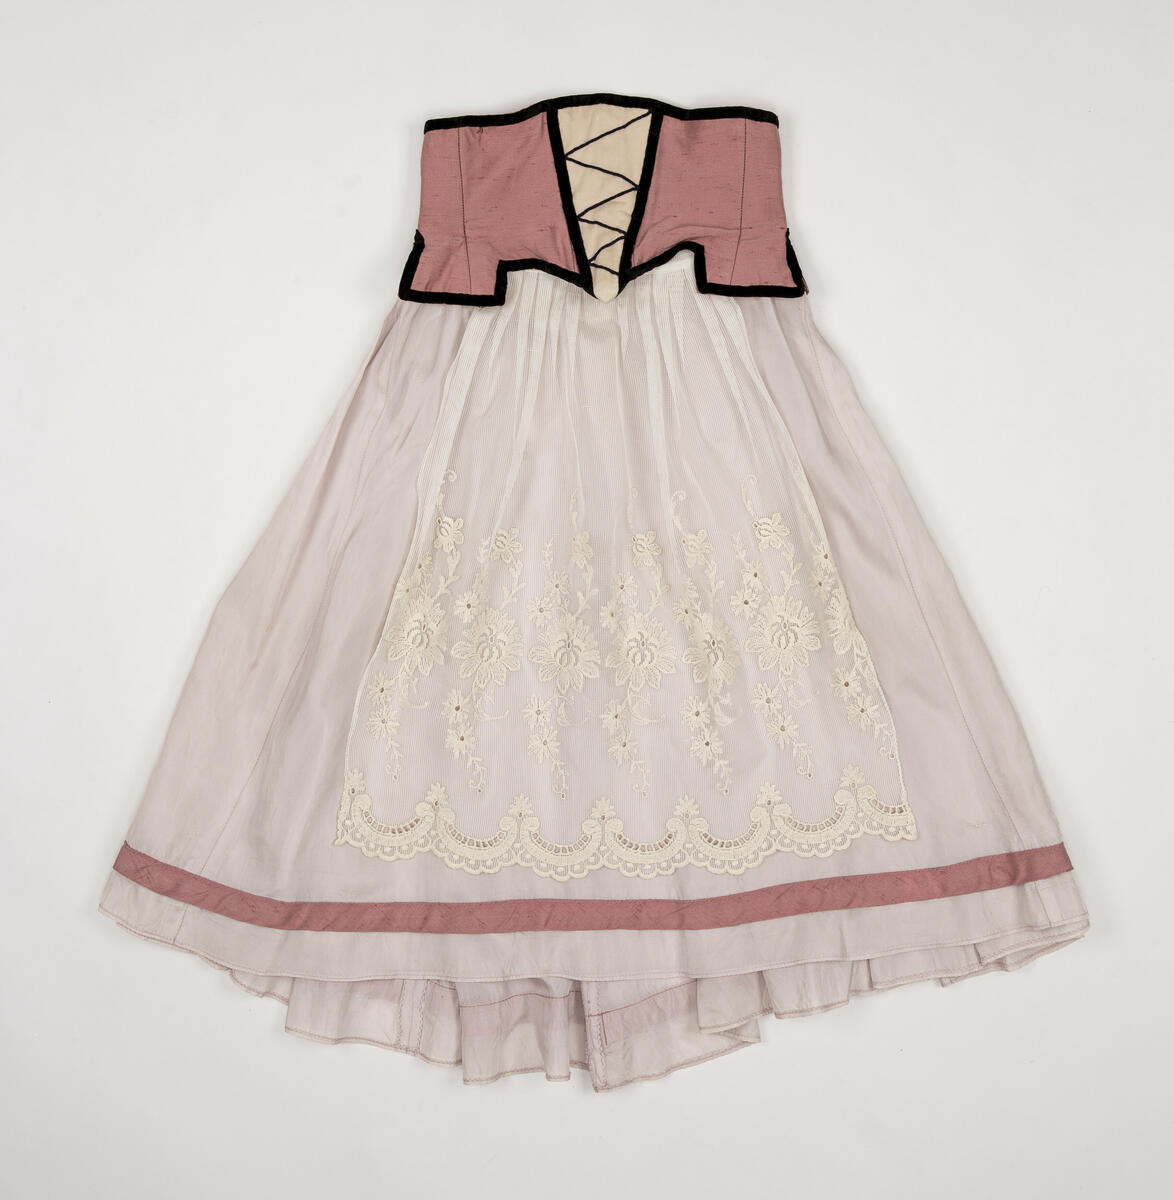 Kjol använd för rollen "Värdshusflicka" (en av flera)  i uppsättningen ”Pierrot i parken”.
Kjolen är tvådelad, dvs. kjolen består av ett korsettliv och en kjol som sytts ihop.